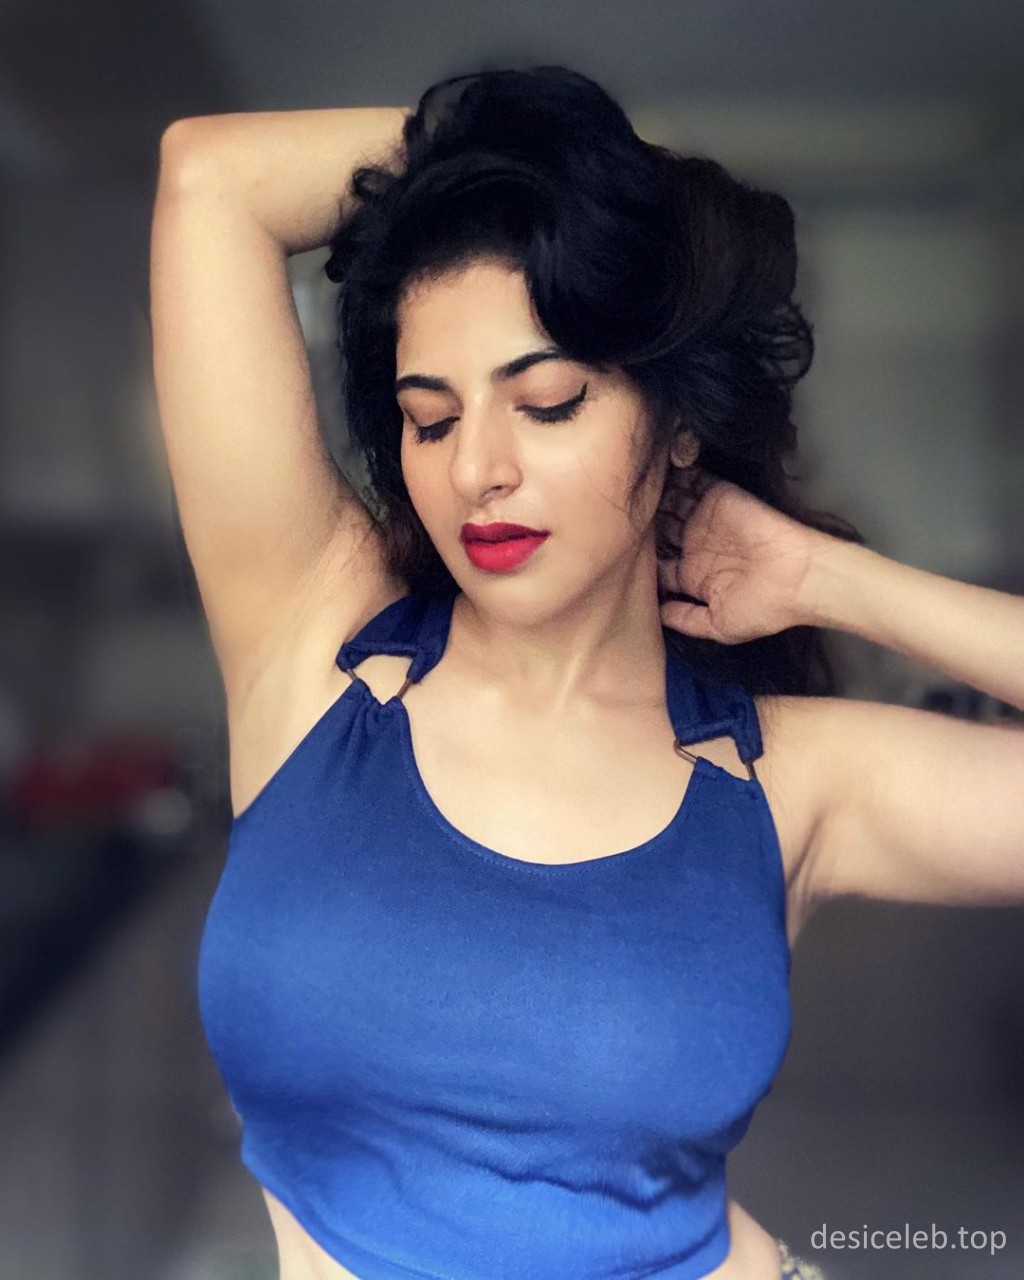 Tamil Actress Iswarya Menon Big Boobs Pics collections, Iswarya Menon big melons, Iswarya Menon boobs, Iswarya Menon cleavage